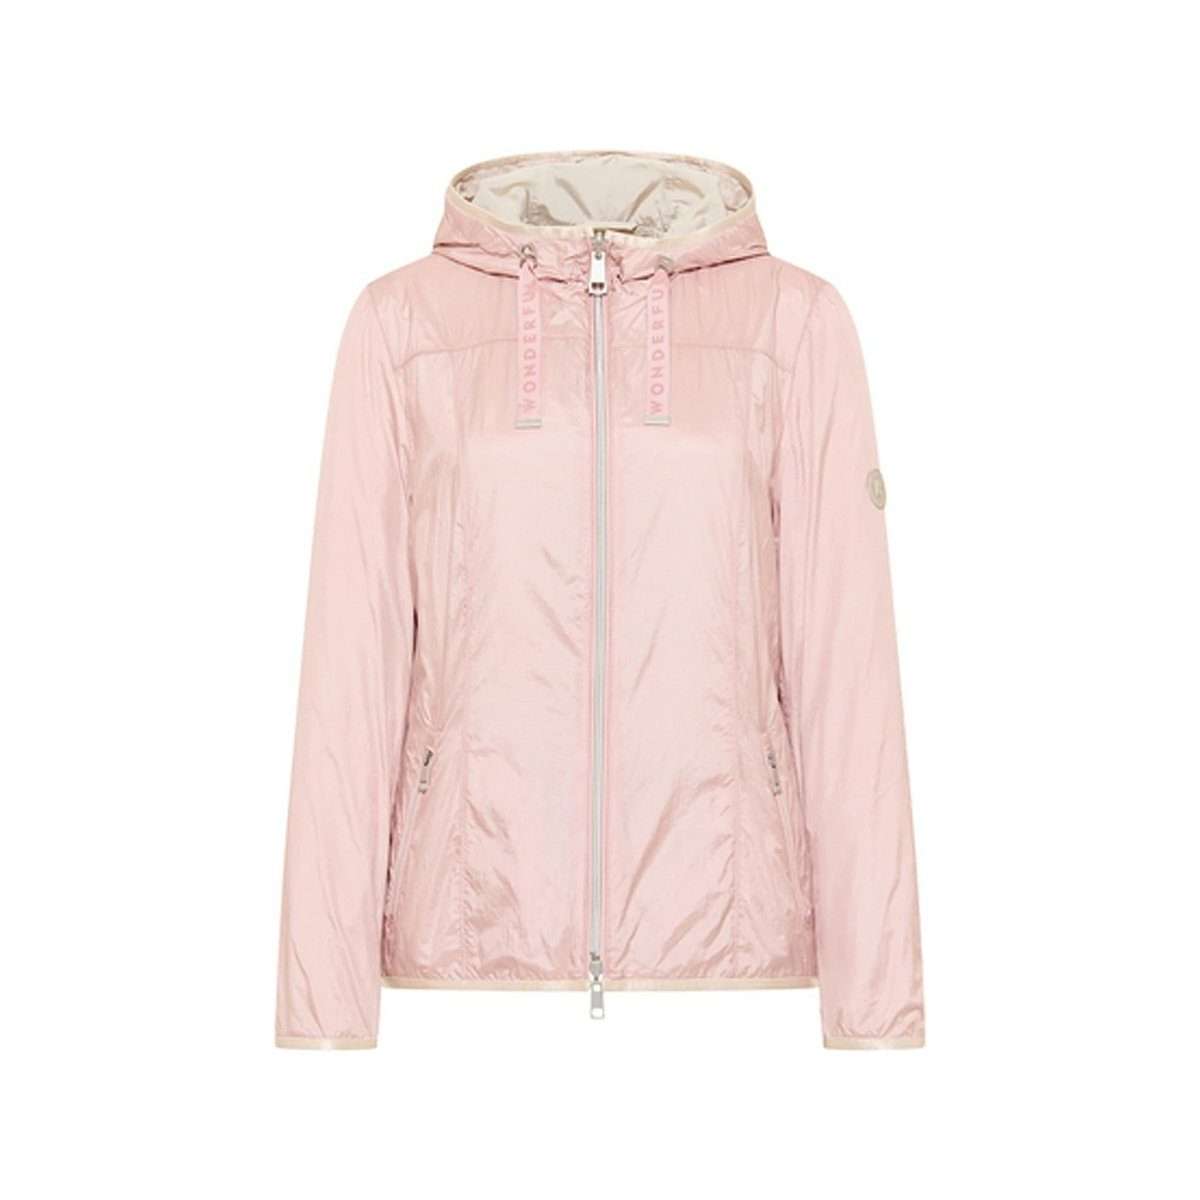 Всепогодная куртка, двусторонняя розовая куртка суперлегкого качества.